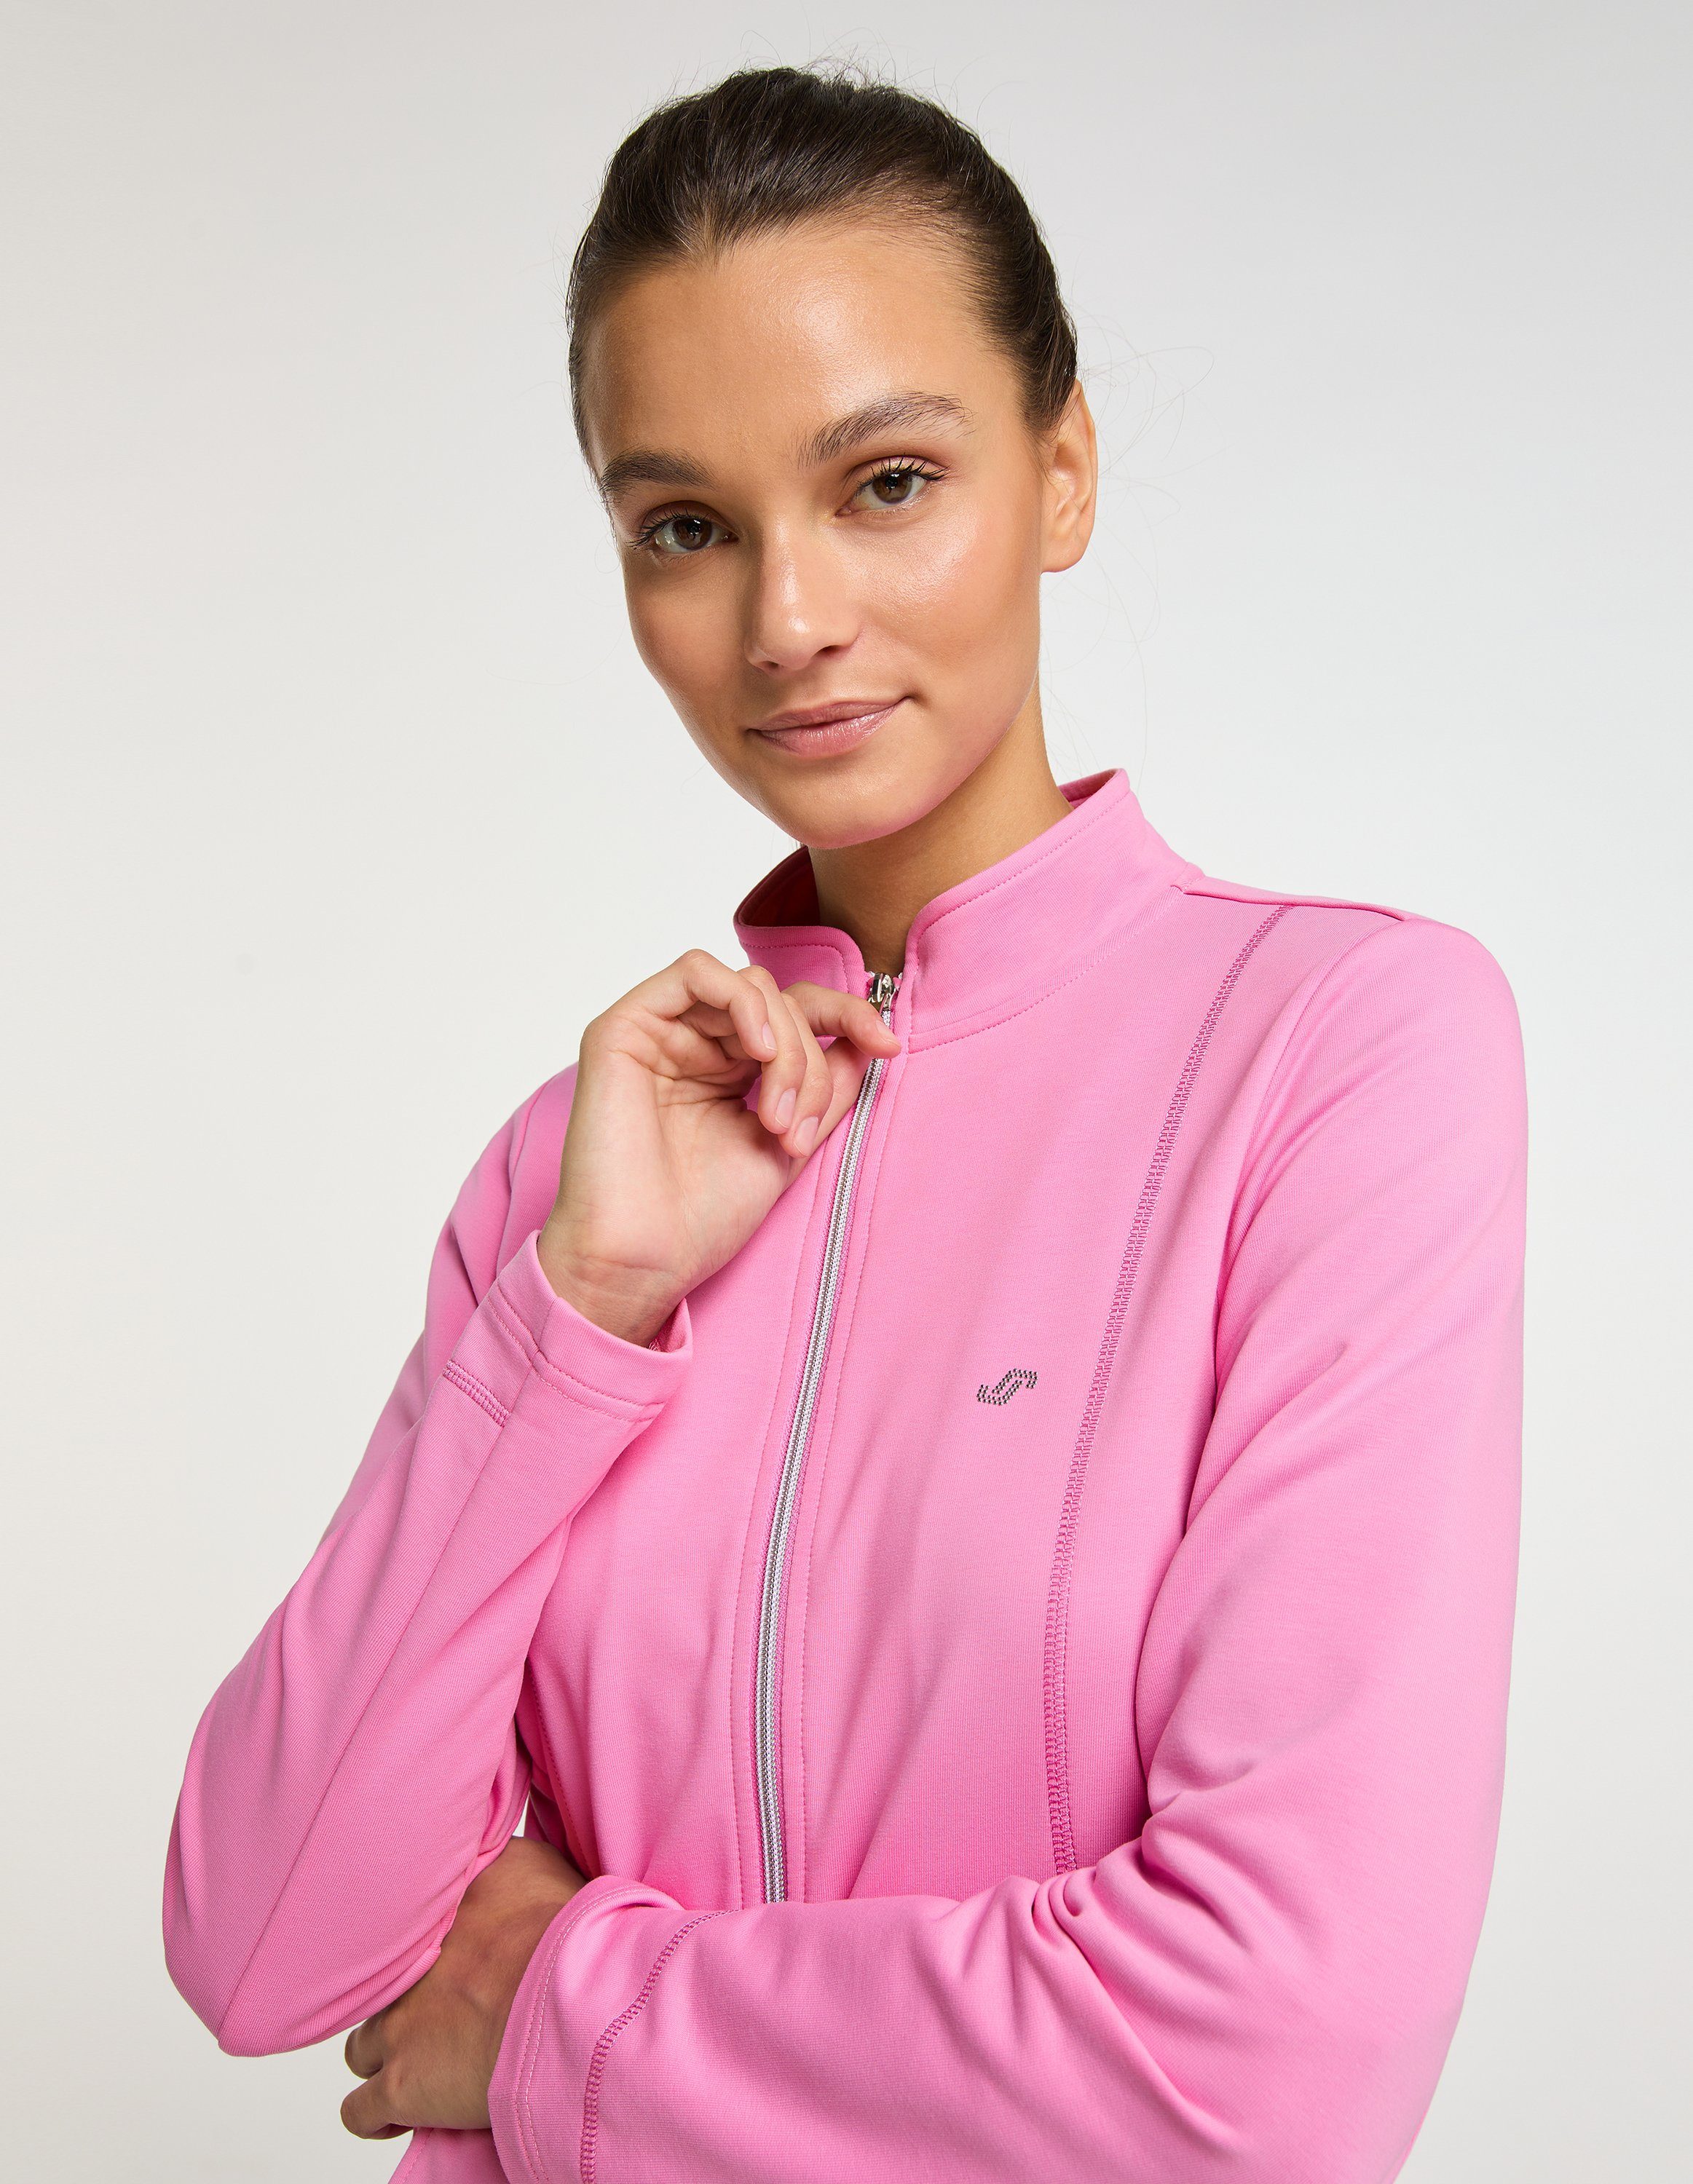 Sportswear Jacke Trainingsjacke Joy pink cyclam DORIT